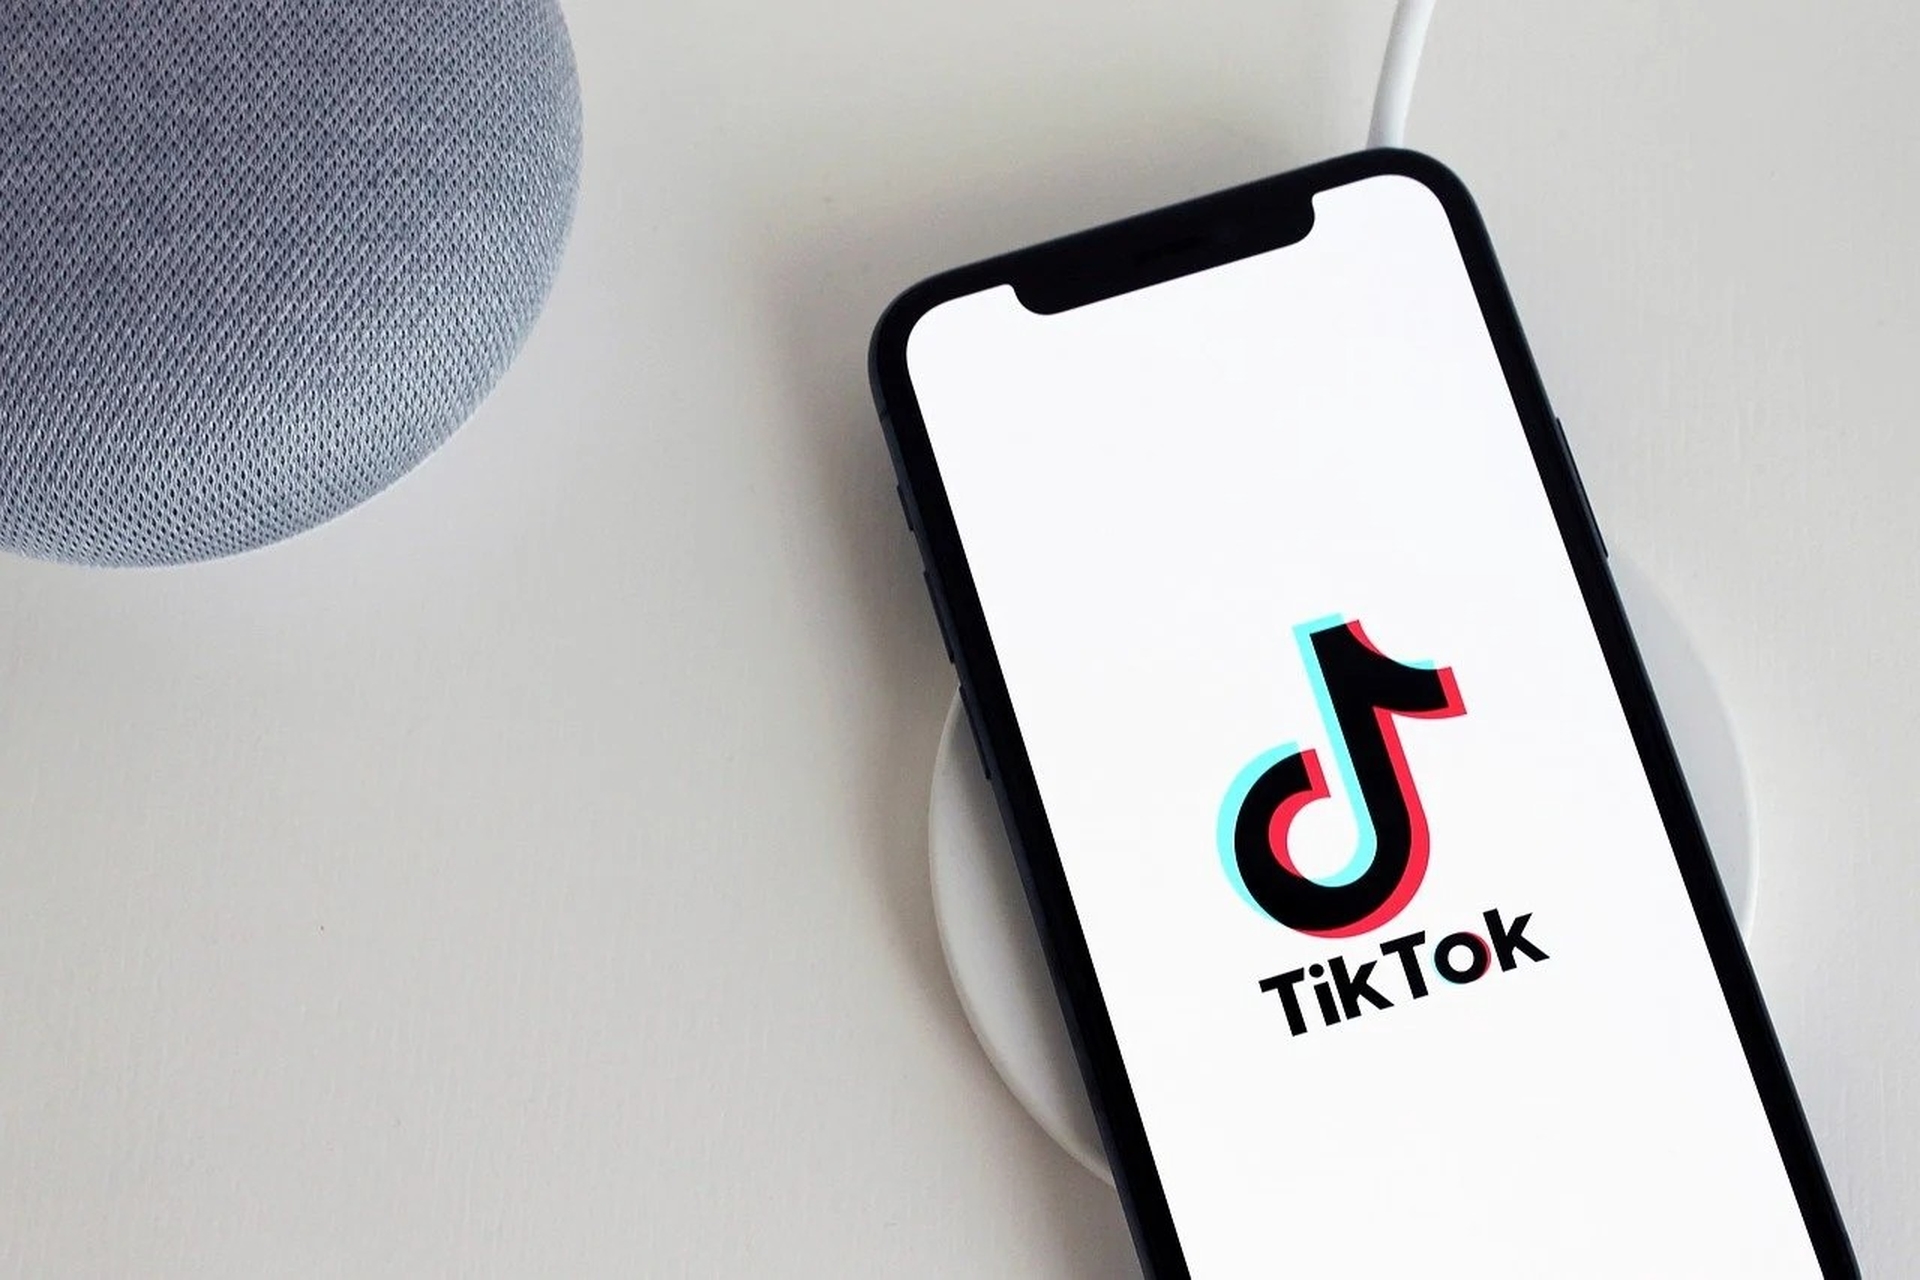 В этой статье мы расскажем, как получить светящийся фильтр TikTok, чтобы вы могли использовать этот новый фильтр и делать с ним отличные фотографии.